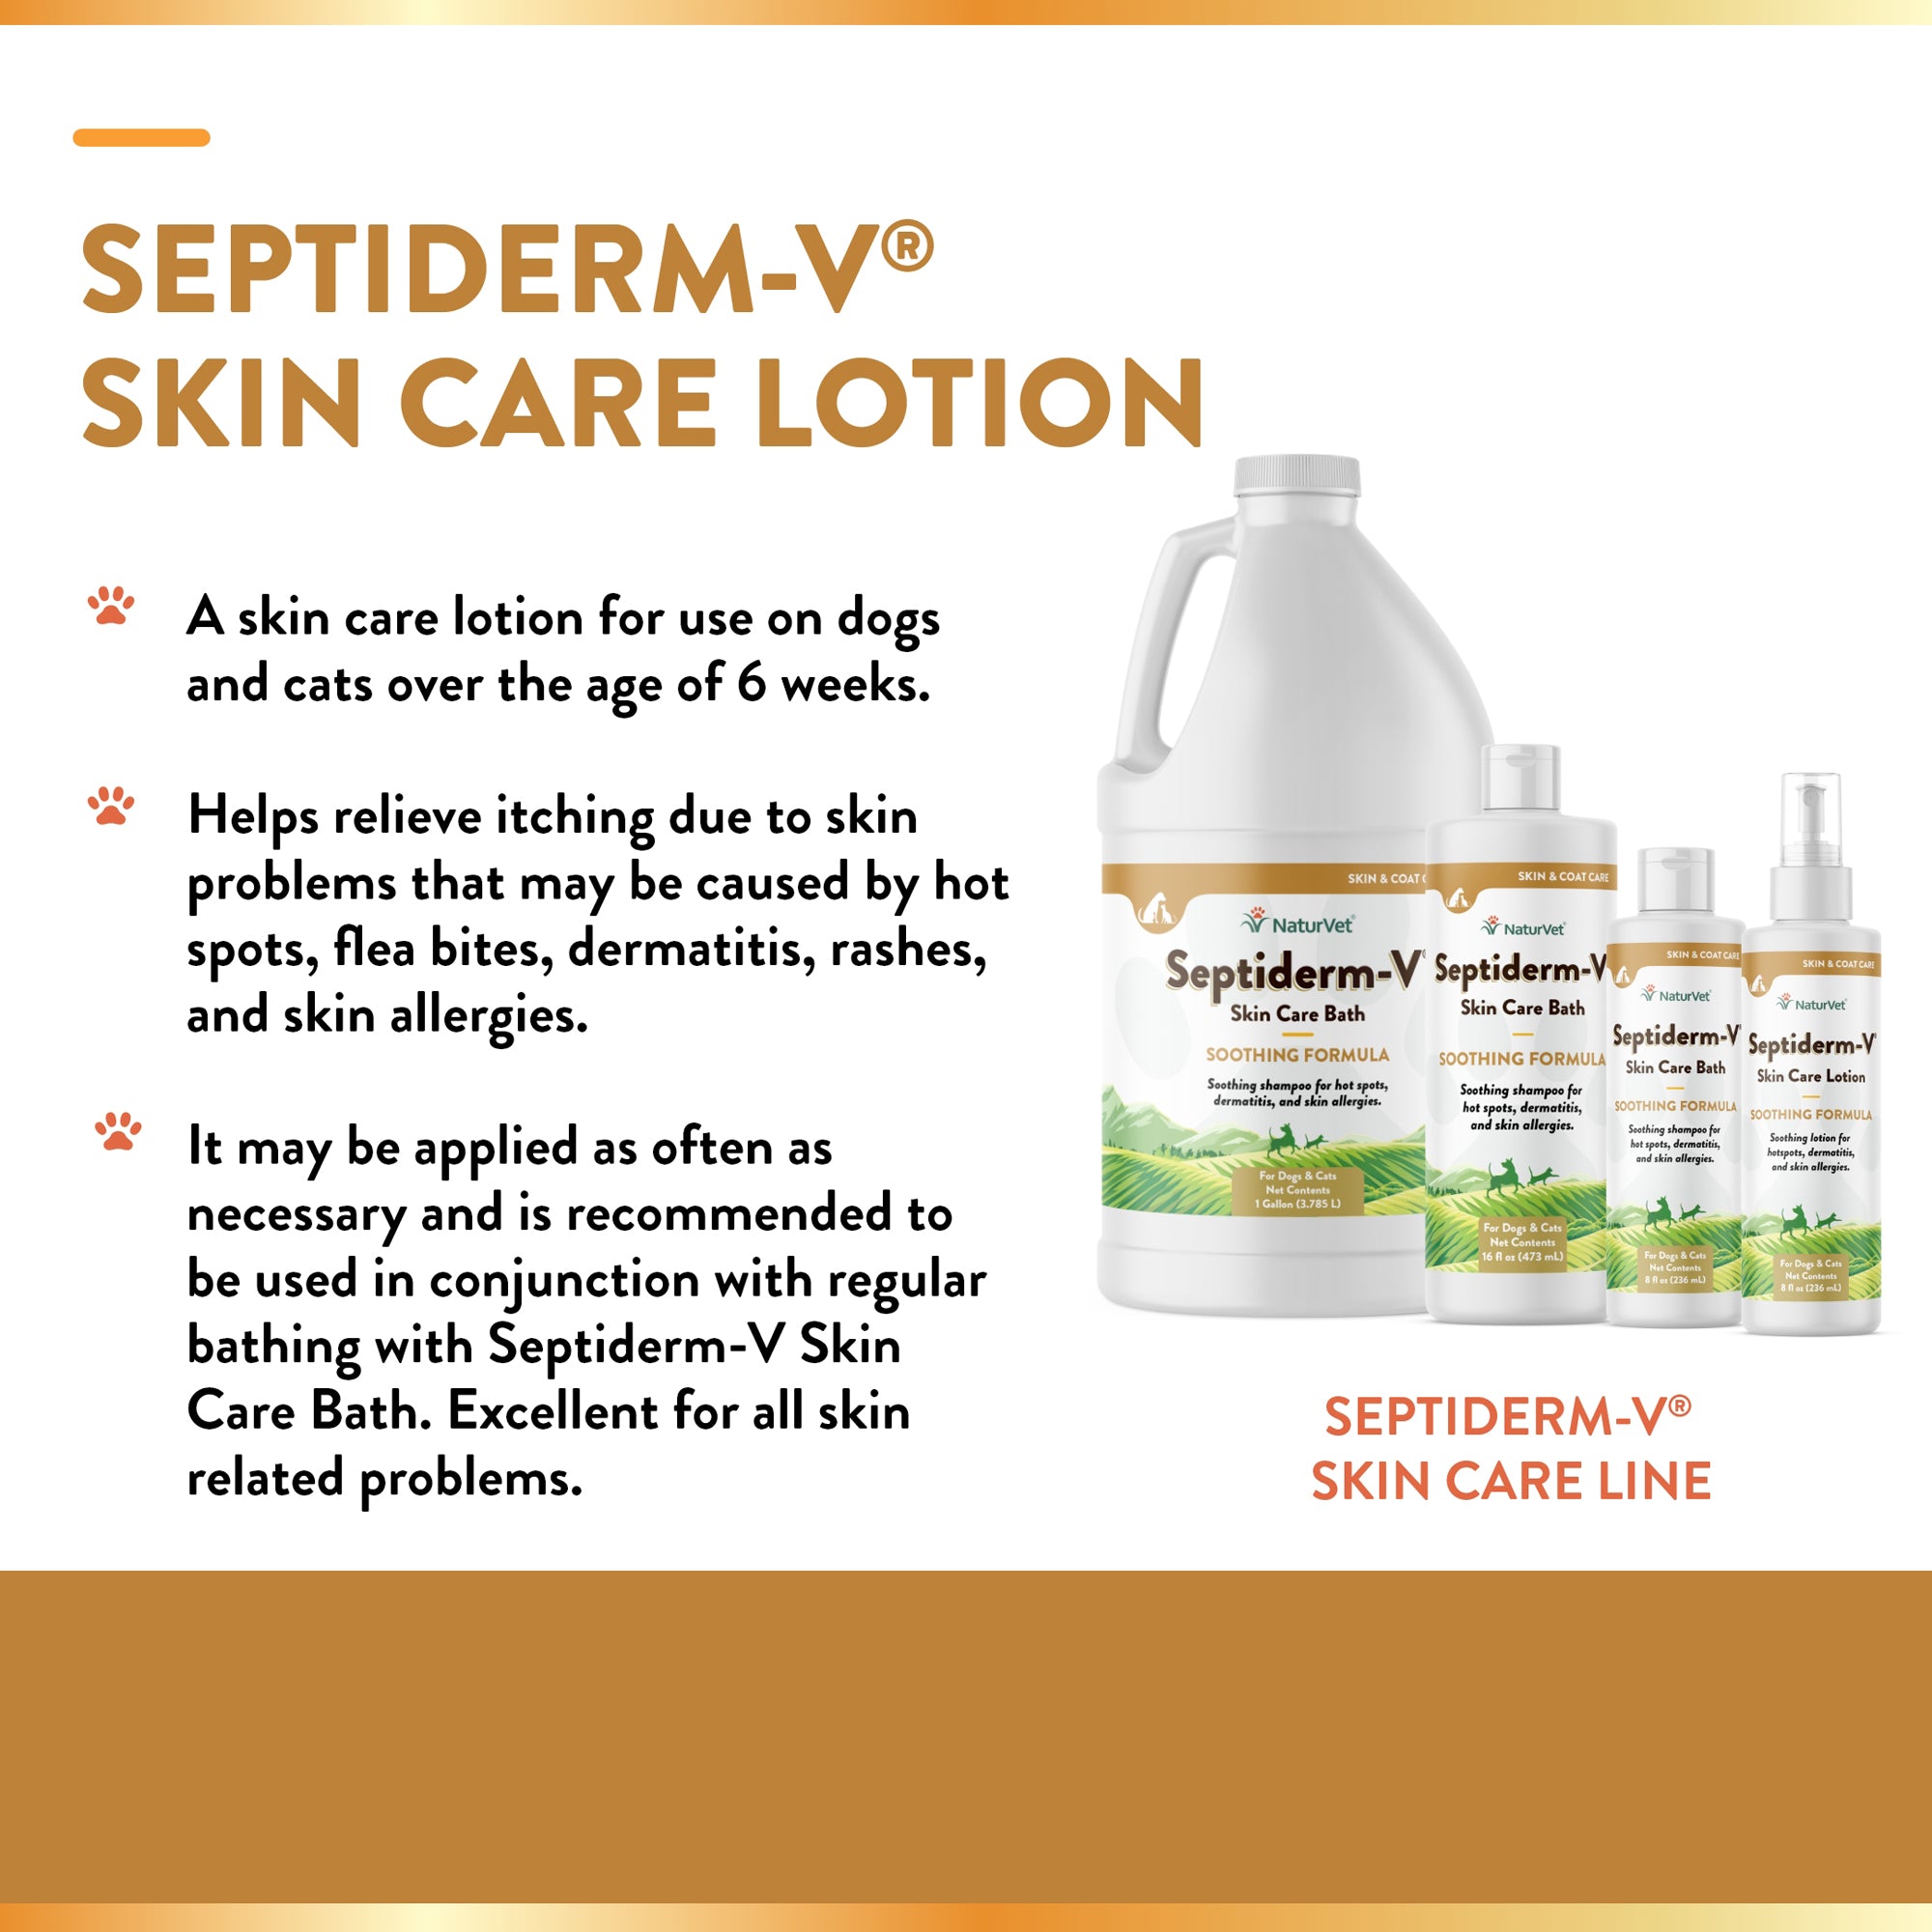 Septiderm-V? Skin Care Lotion